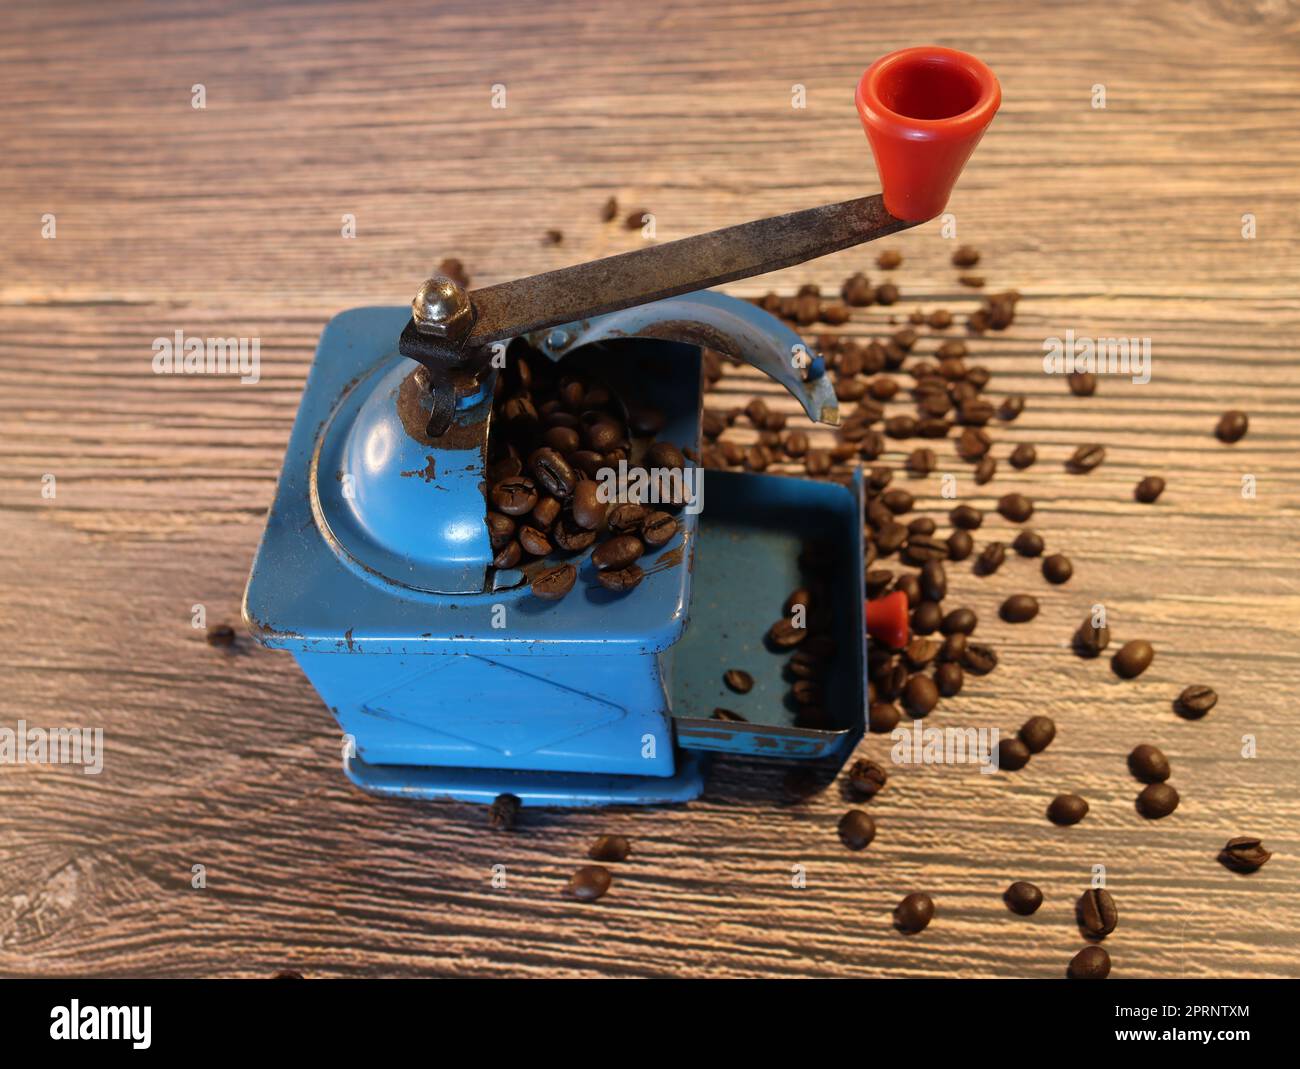 Machine à moudre grains de café ancien moulin manuel en métal Photo Stock -  Alamy